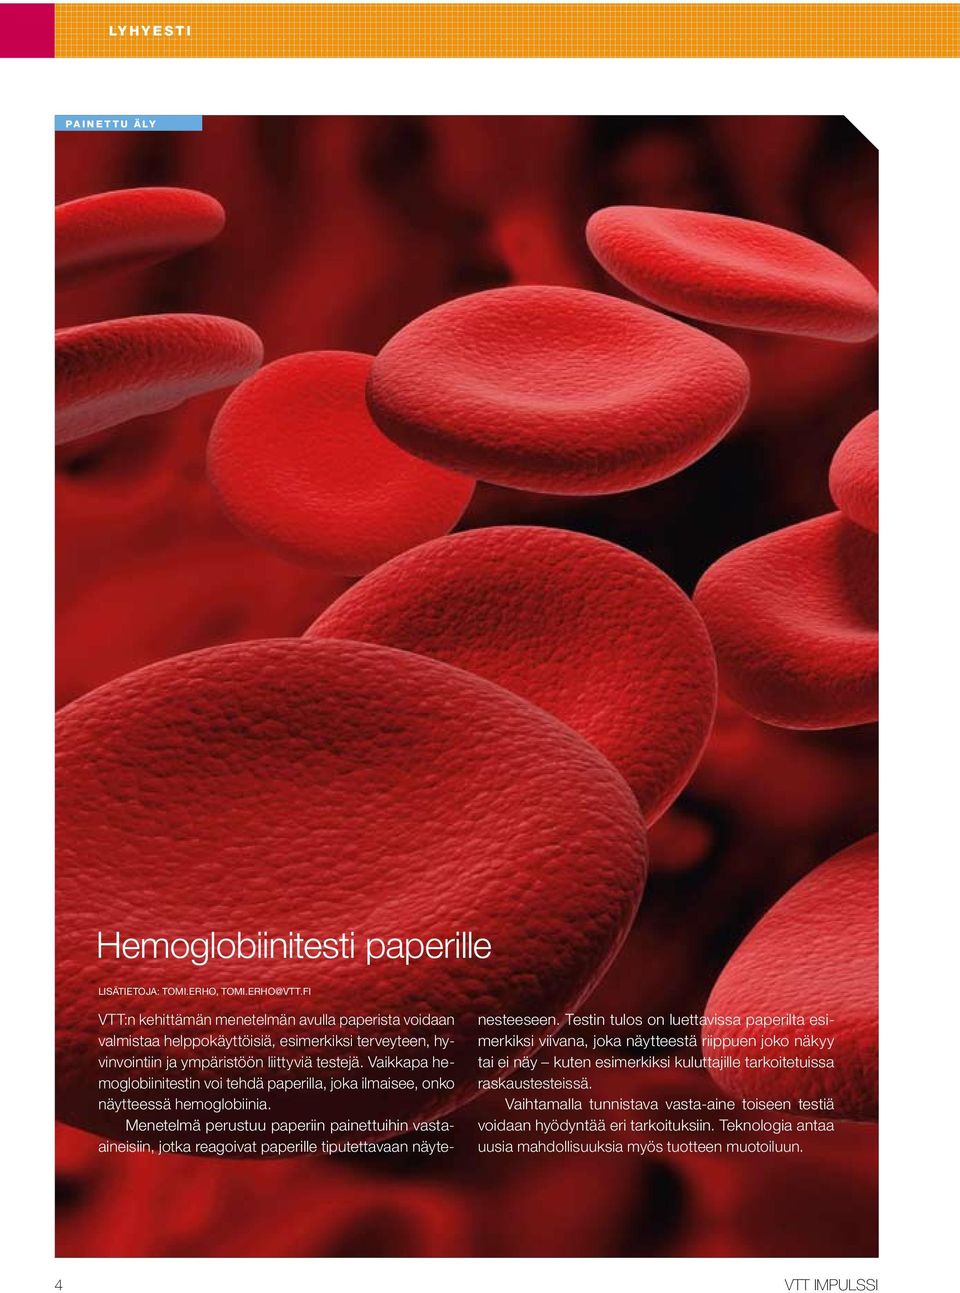 Vaikkapa hemoglobiinitestin voi tehdä paperilla, joka ilmaisee, onko näytteessä hemoglobiinia.